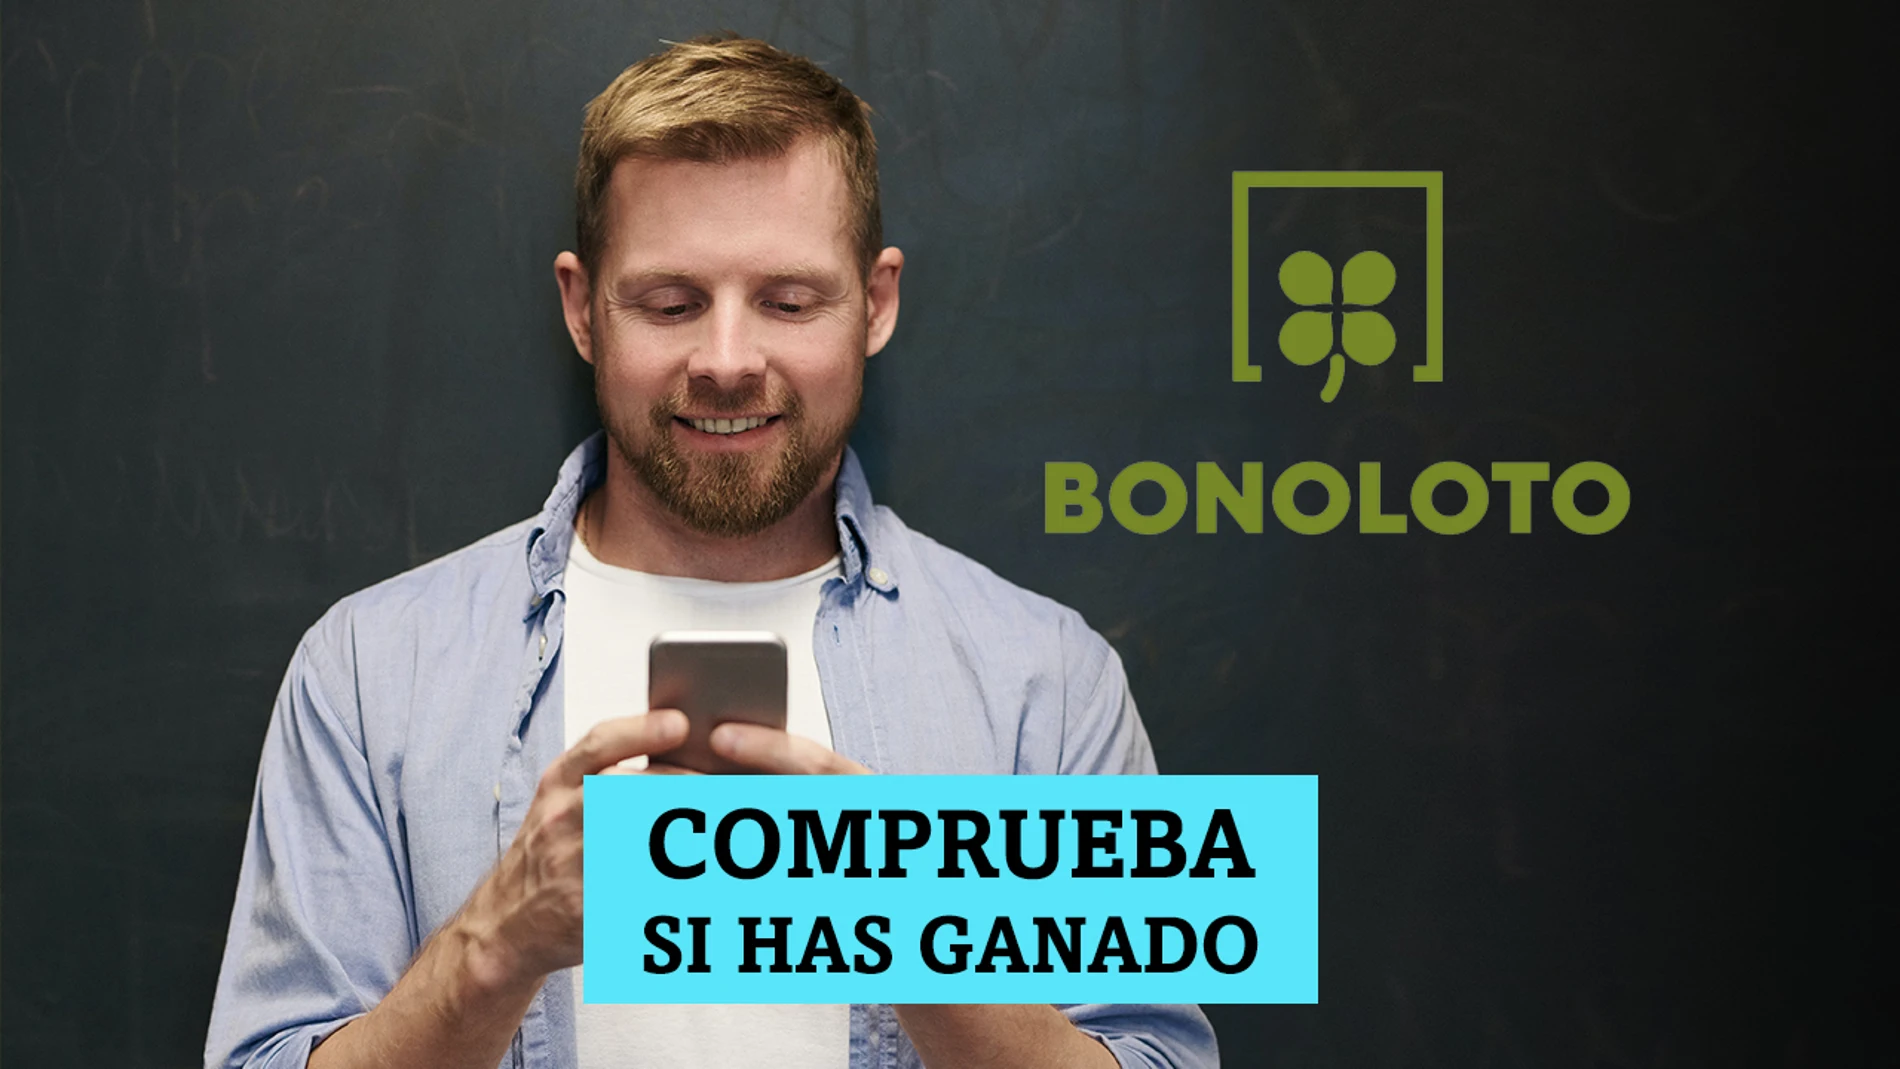 Bonoloto | Comprobar resultados hoy, miércoles 8 de septiembre de 2021 